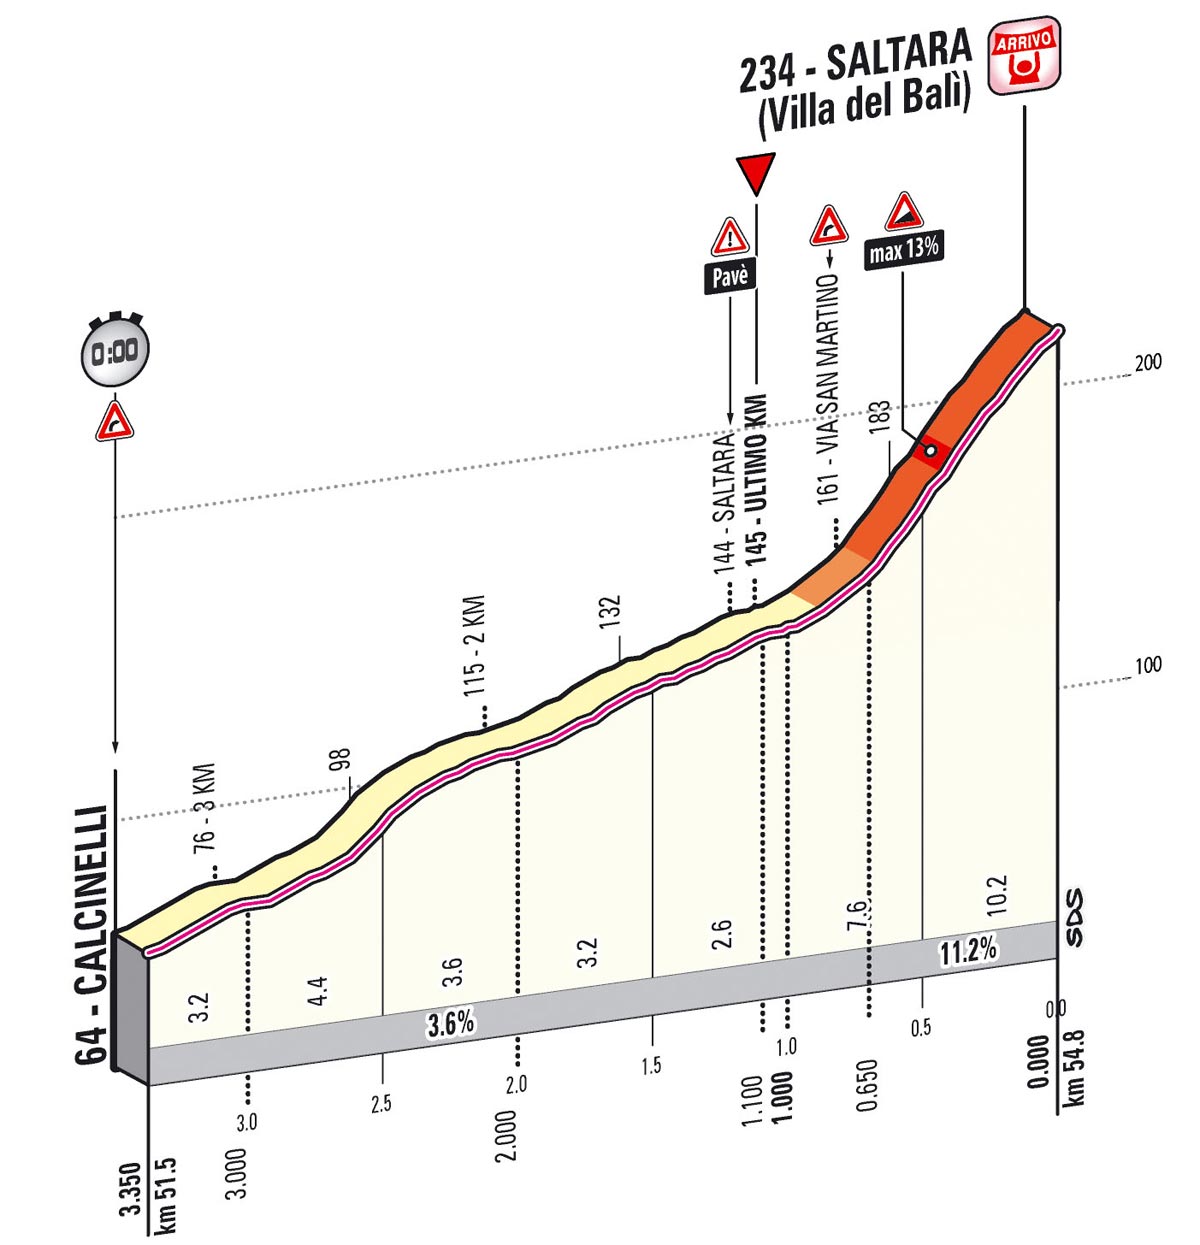 Giro d'Italia 2013 Stage 8 last kms